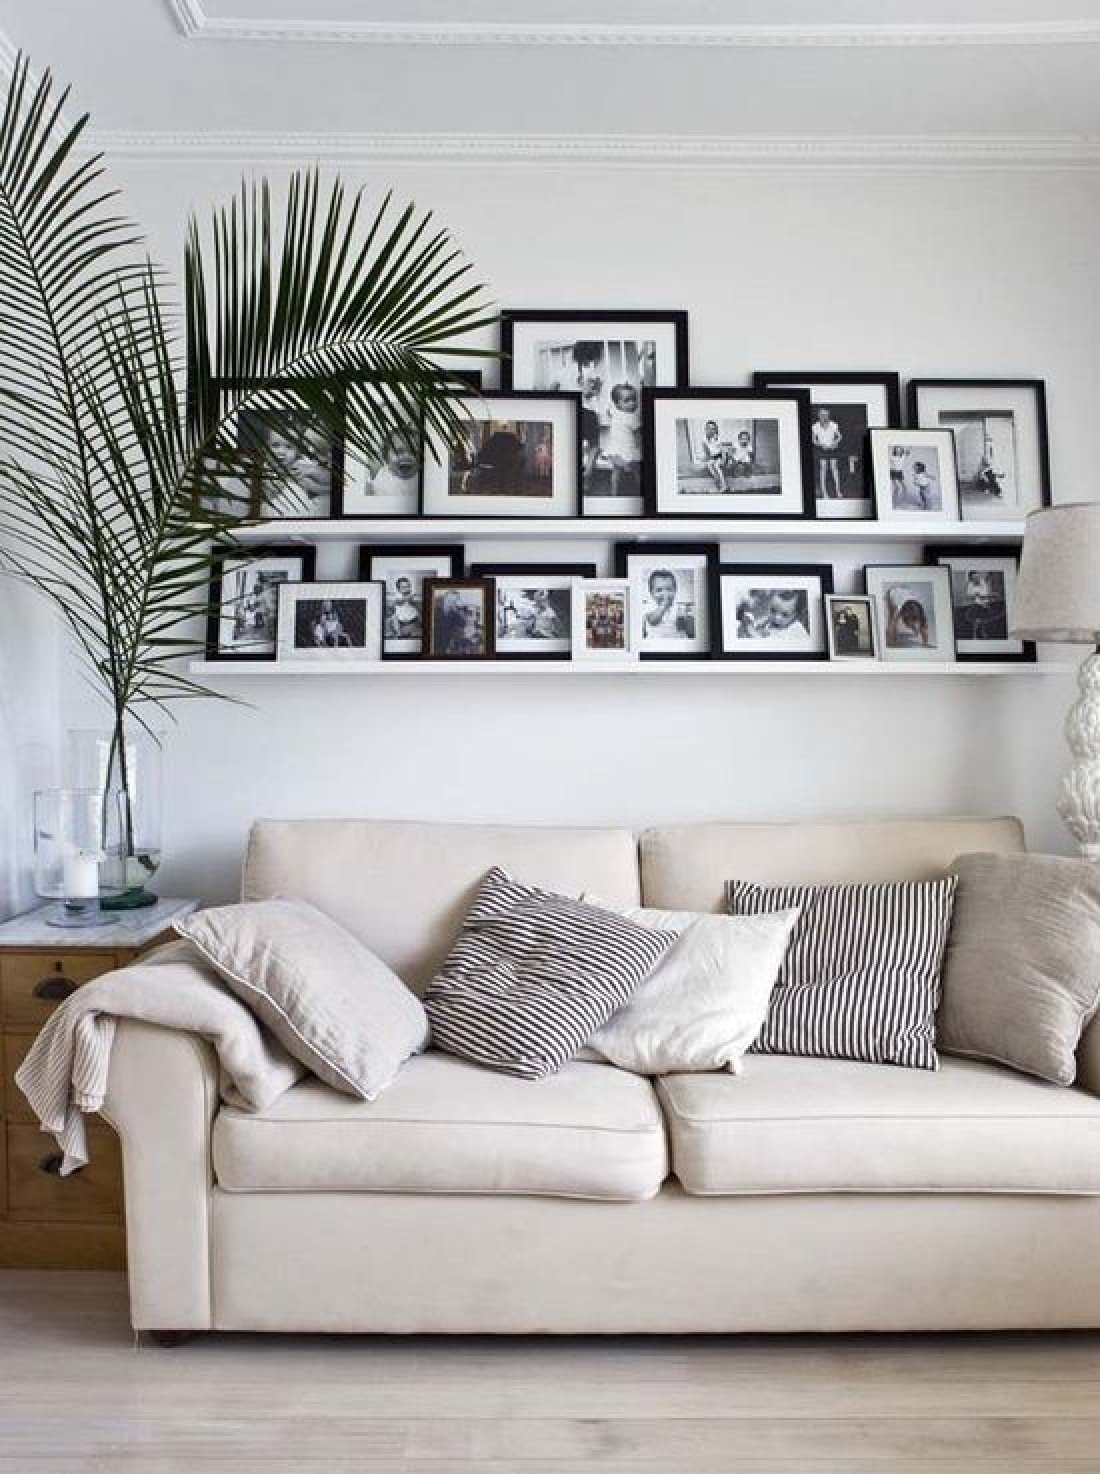 Фото над диваном в гостиной как оформить. Декор стен в гостиной в современном. Рамки на стене в интерьере. Полочки над диваном. Декор над диваном.